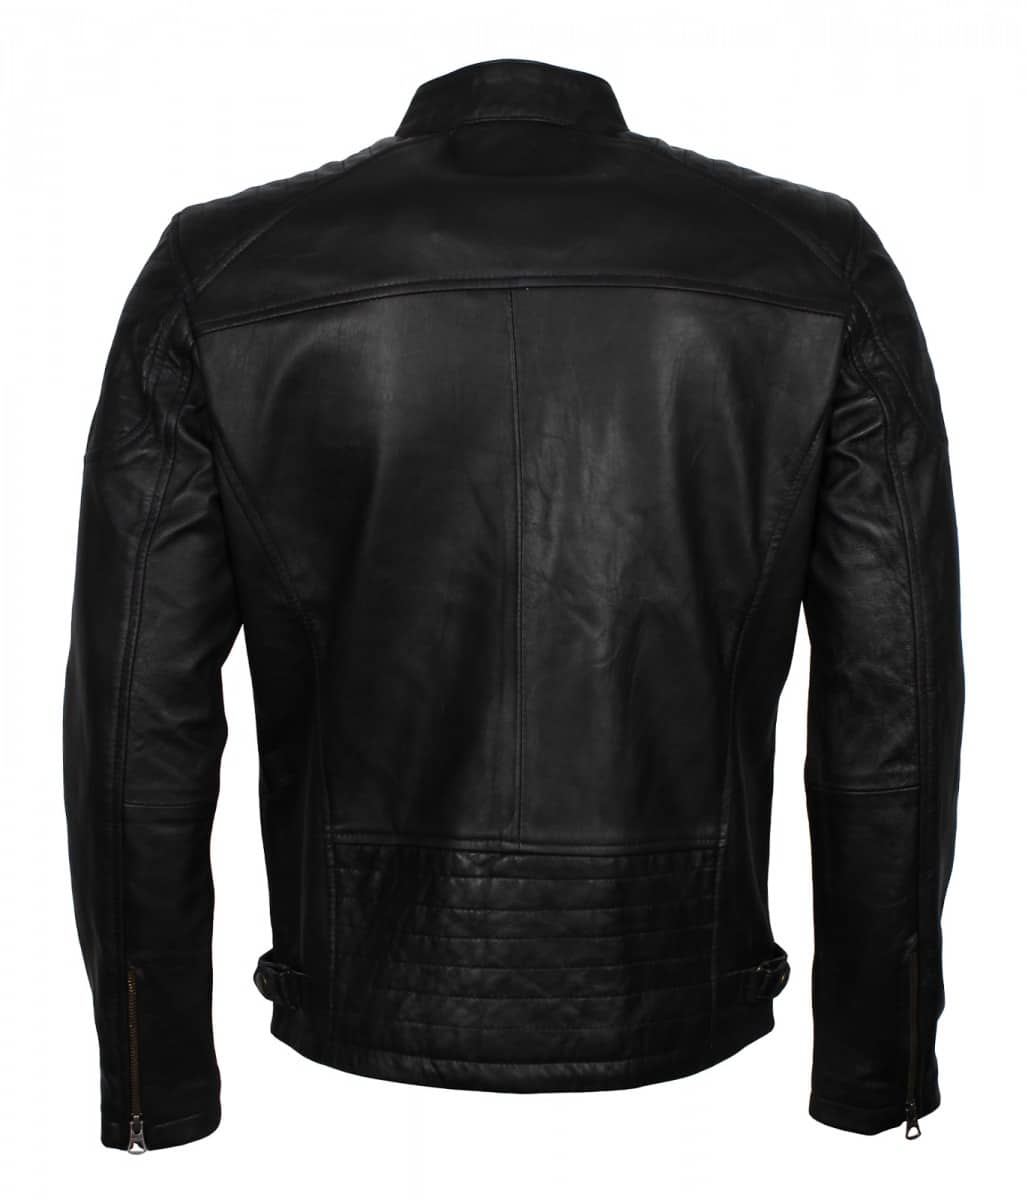 Black Leather Quilted Jacket | Men's Black Genuine Leather Quilted Jacket